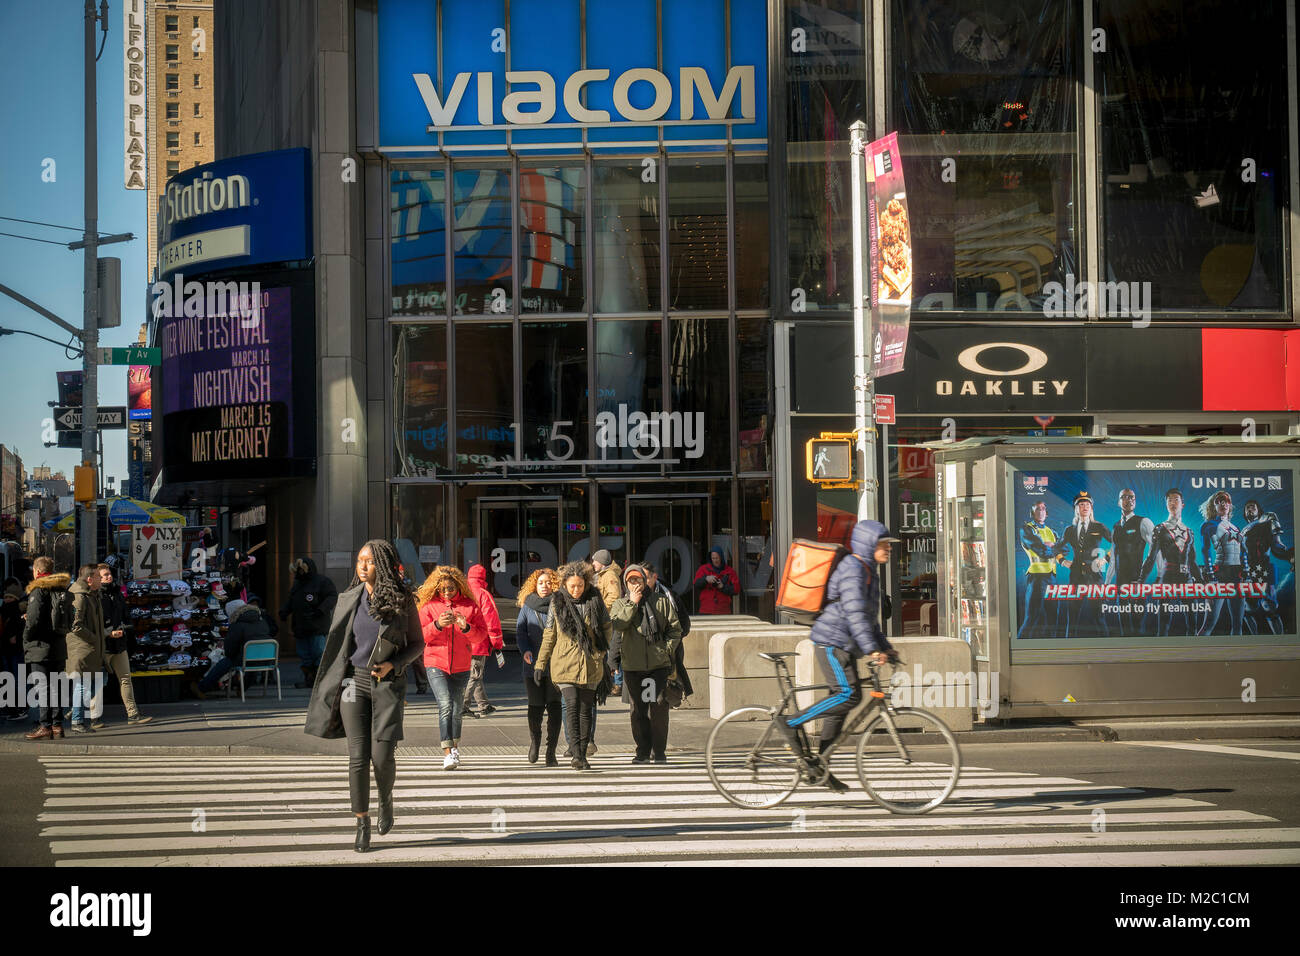 Die viacom Hauptsitz in Times Square in New York am Montag, 5. Februar 2018. Zacks Investment Research vor kurzem zurückgestuft Viacom aus der Warteschleife zu verkaufen. Viacom ist für das vierte Quartal am Donnerstag zu lösen. (© Richard B. Levine) Stockfoto